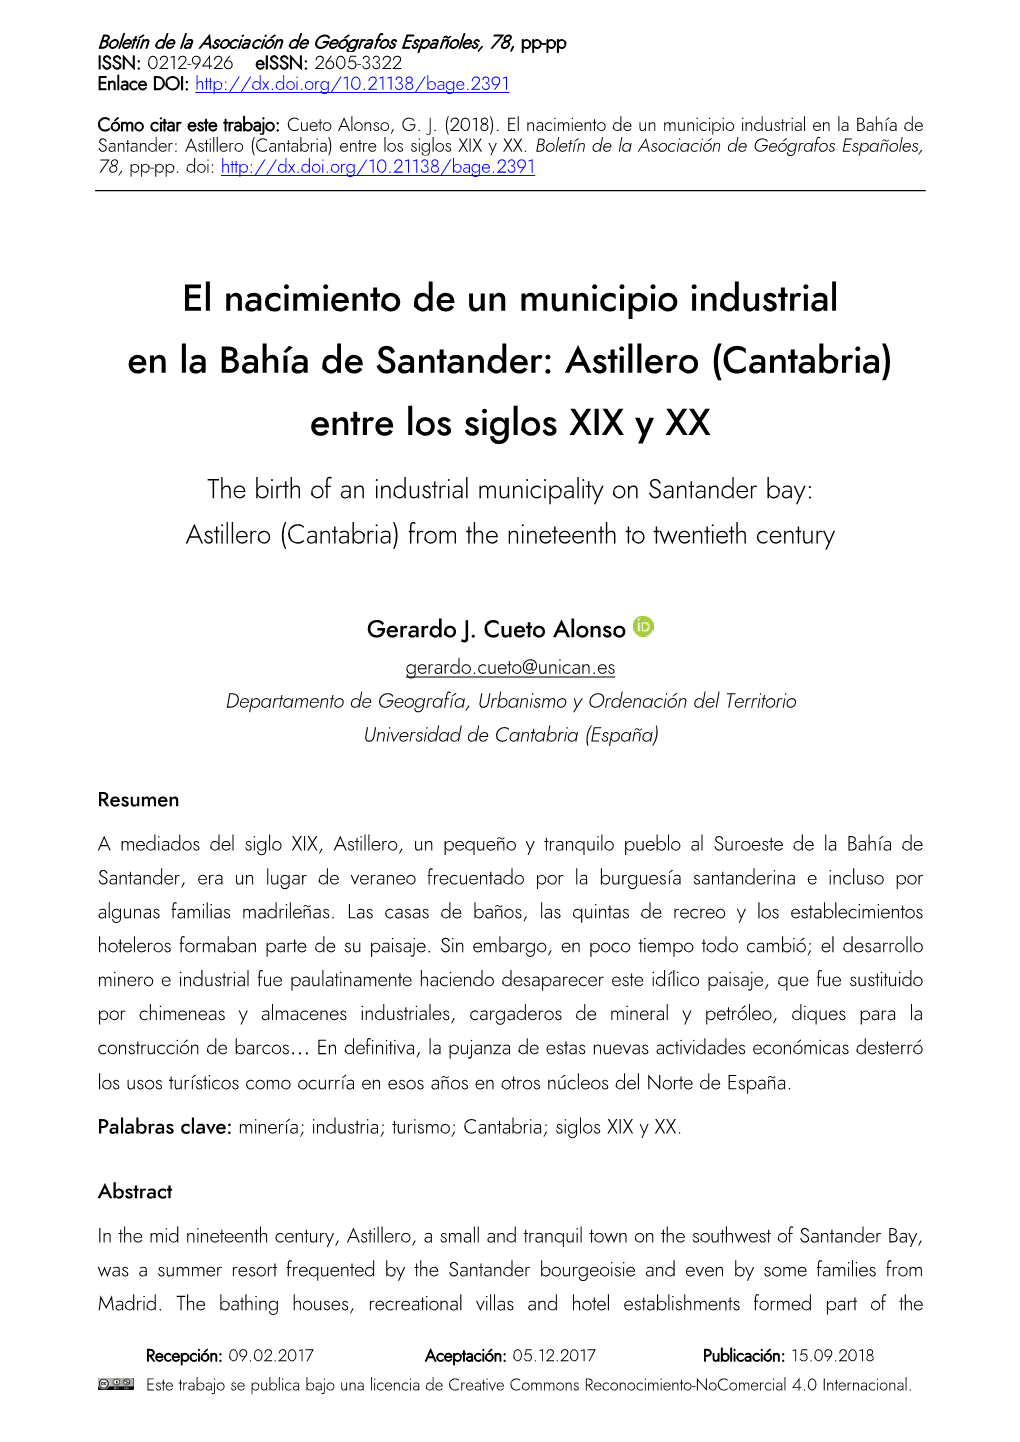 Astillero (Cantabria) Entre Los Siglos XIX Y XX / the Birth